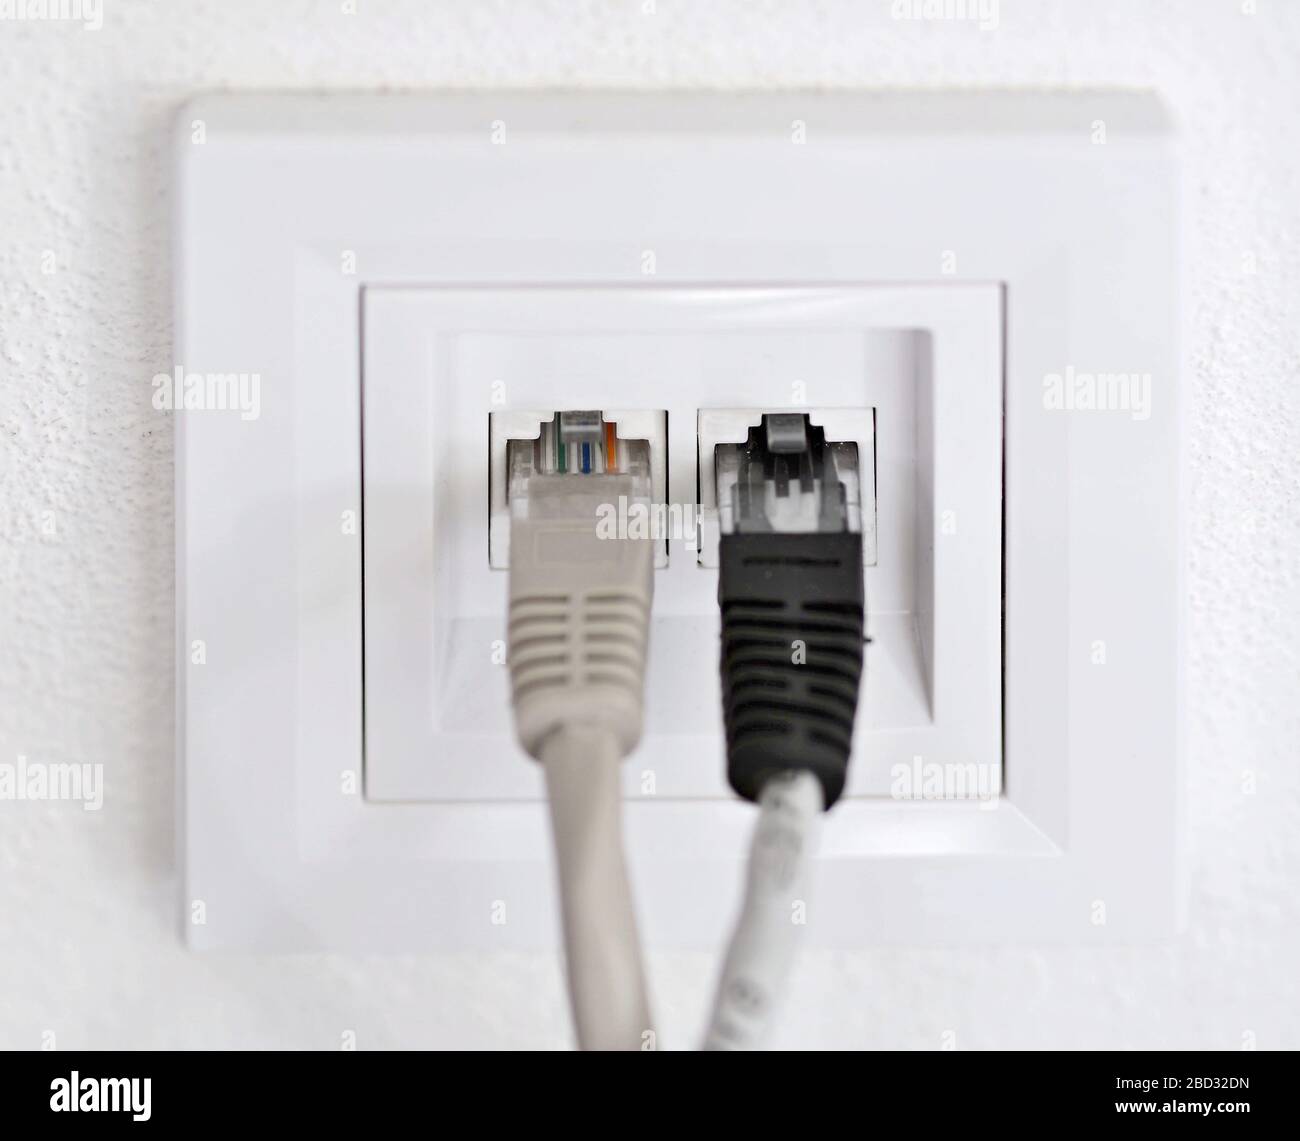 Steckdosen mit Internetkabel an weißer Wand, Nahaufnahme. Stromversorgung  Stockfotografie - Alamy